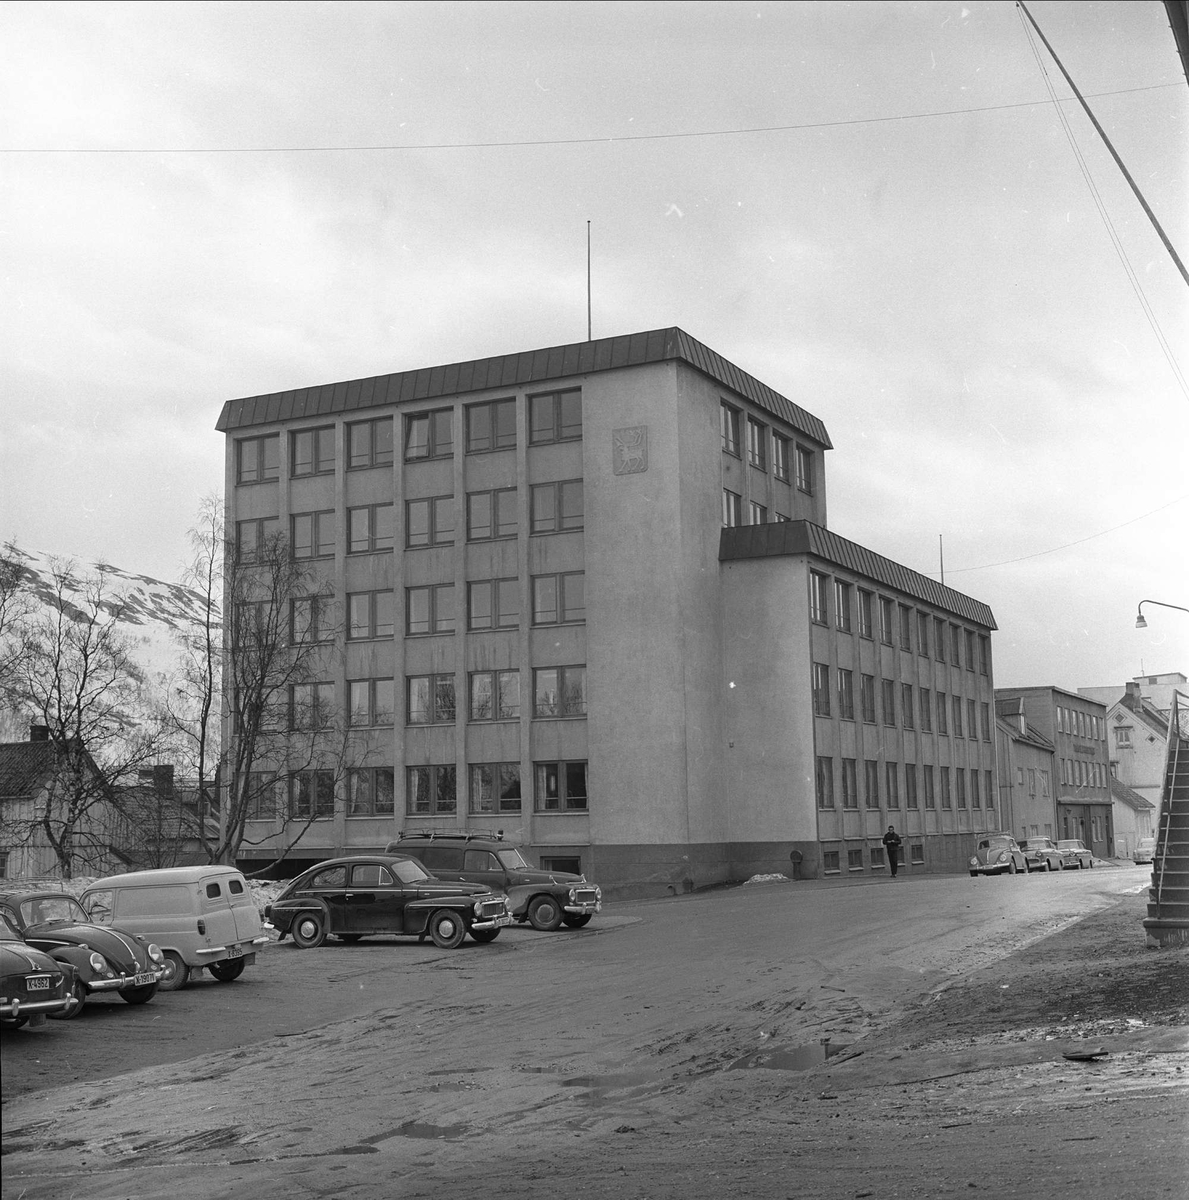 Tromsø, Troms, april 1963. Bygning og parkerte biler.